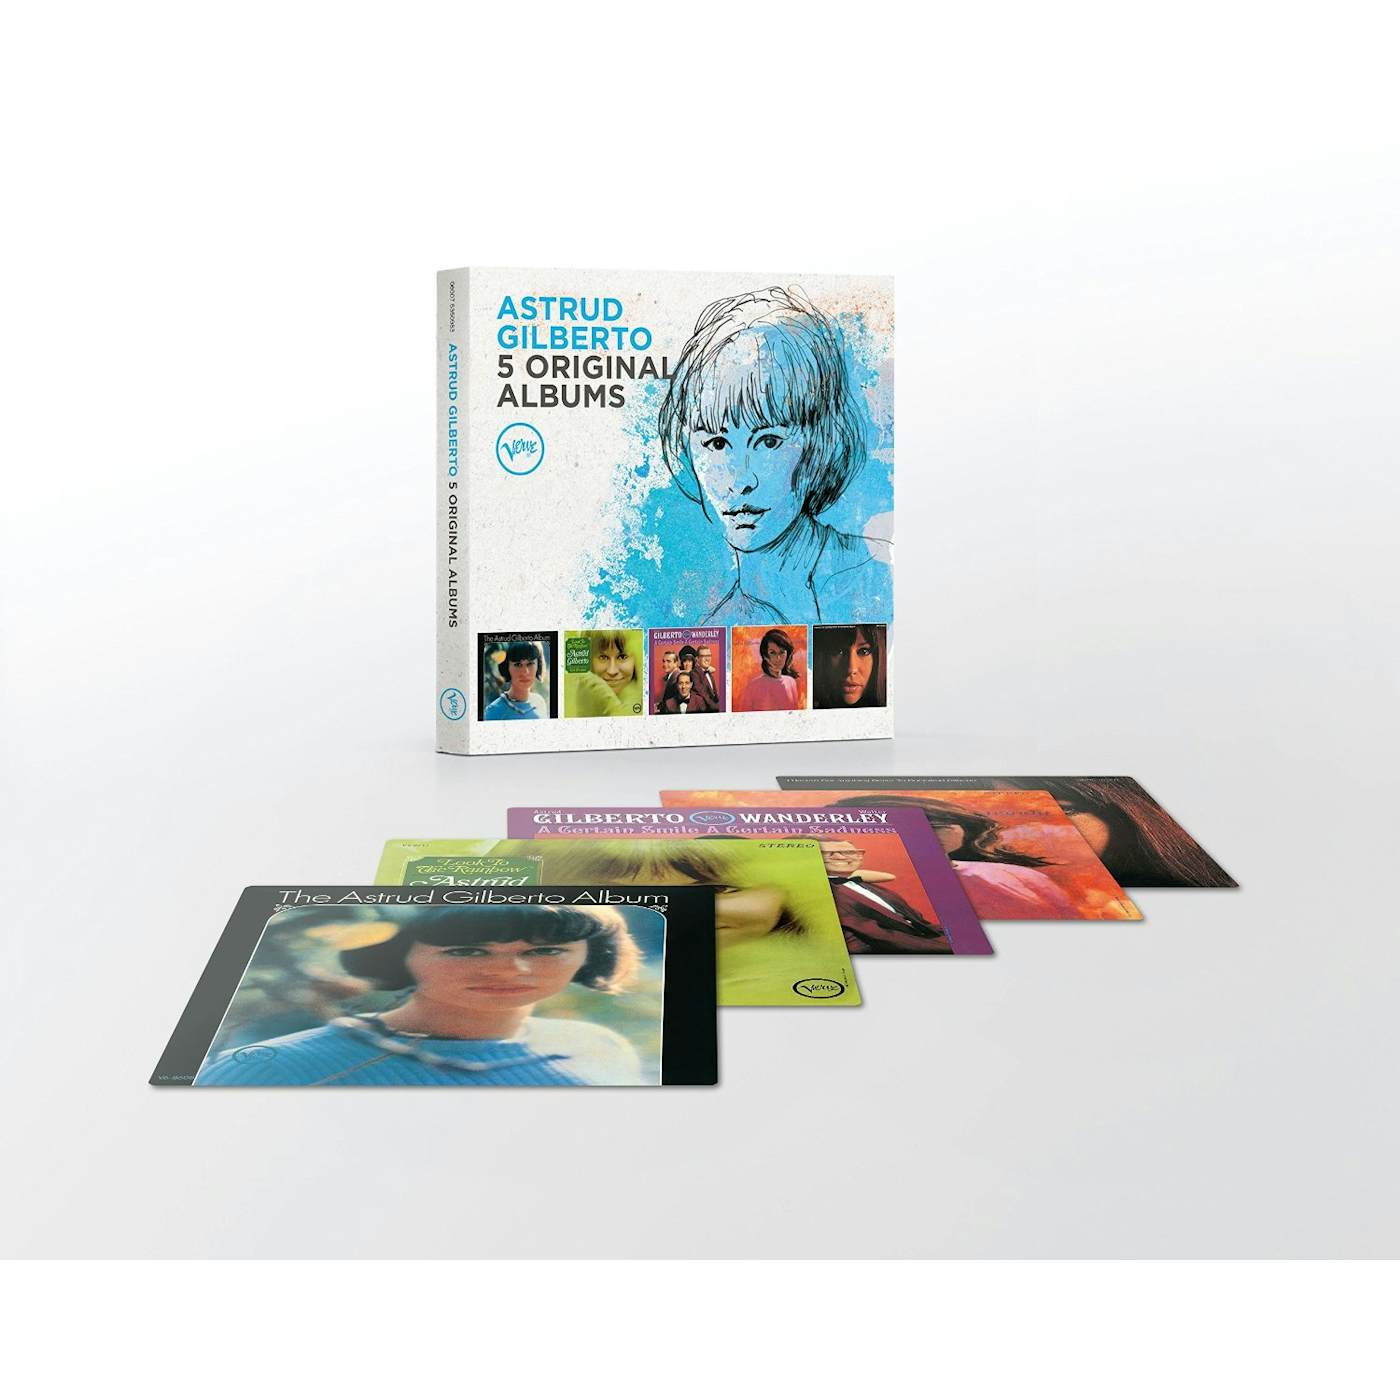 Astrud Gilberto 5 ORIGINAL ALBUMS CD